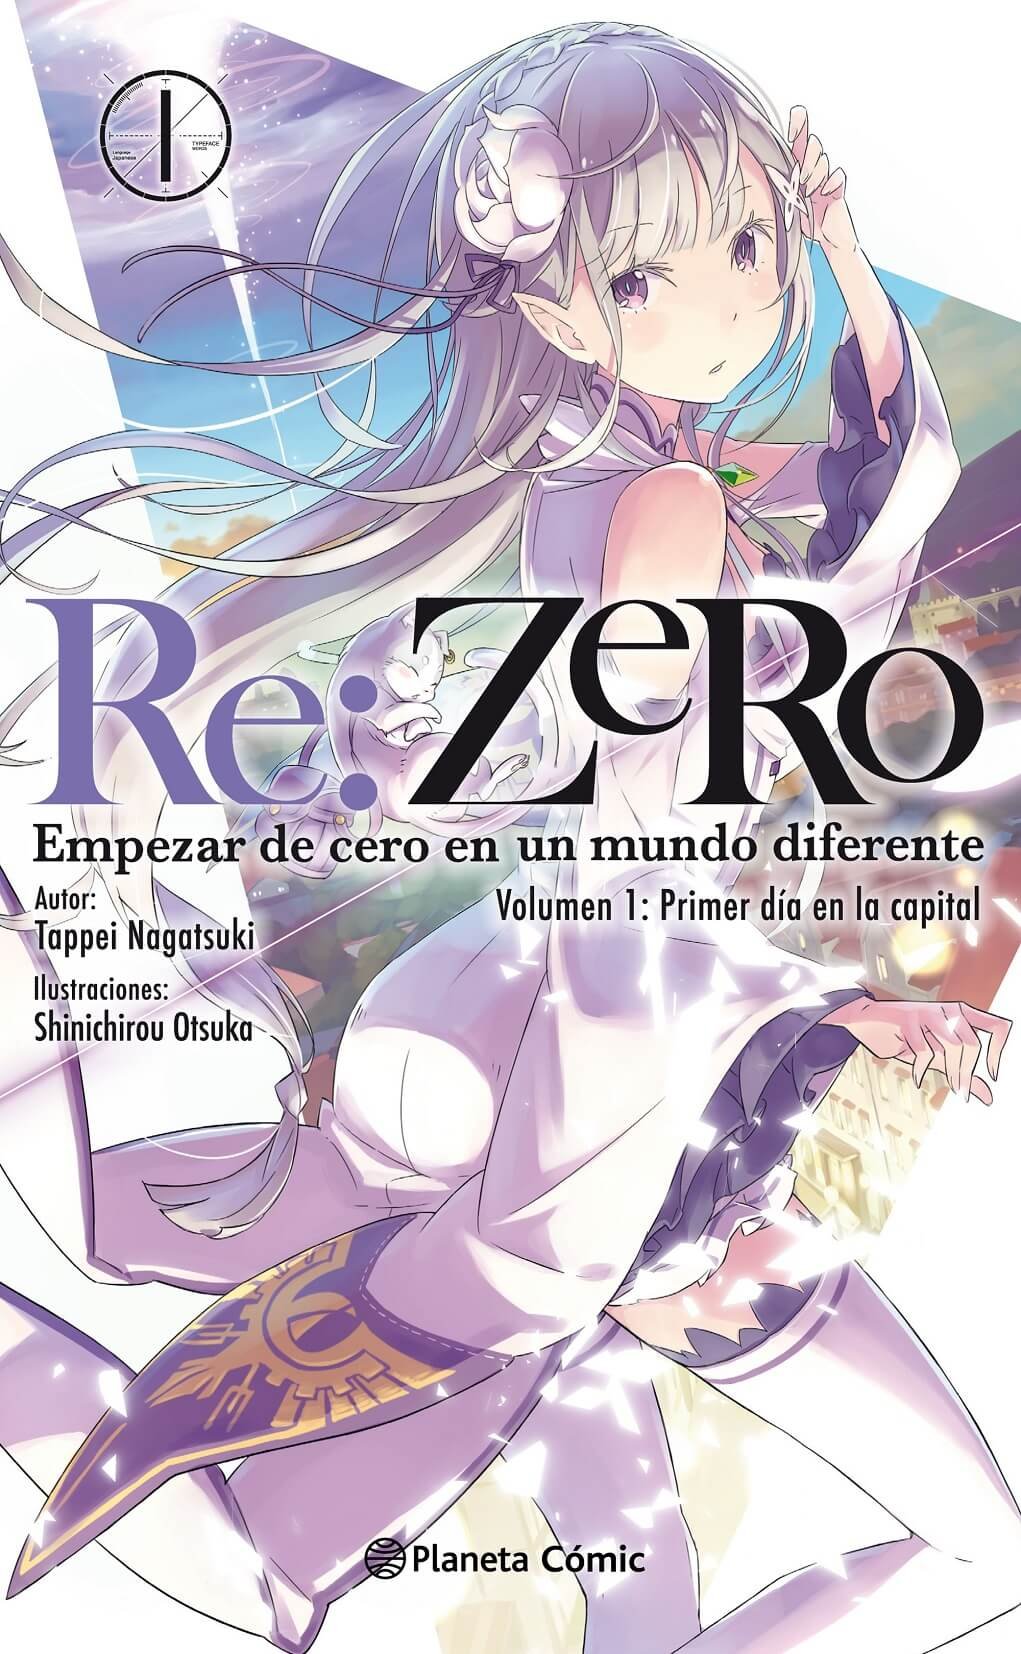 Reseña novela ligera Re:Zero arco 1, volúmen 1